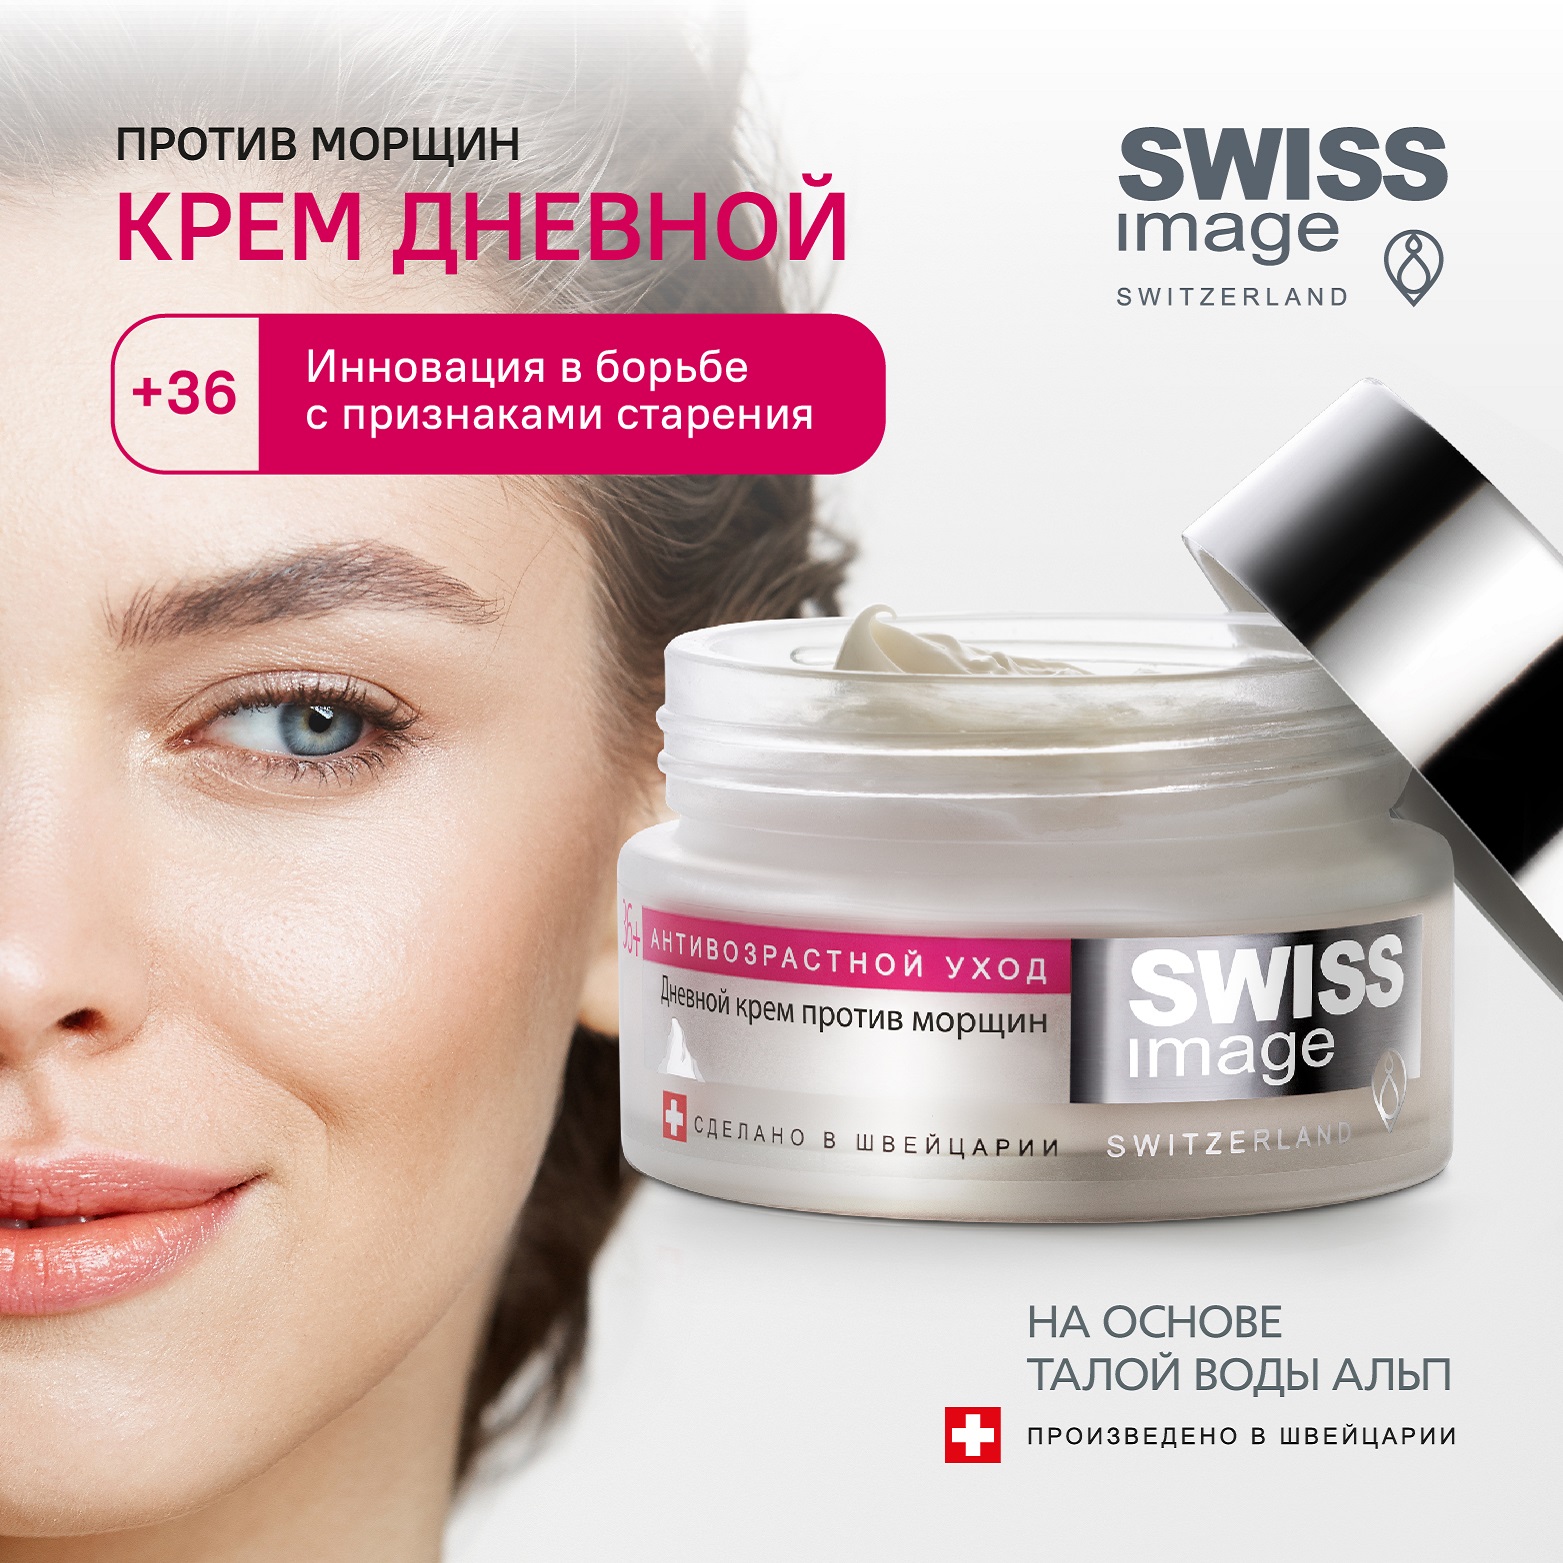 Дневной крем для лица Swiss image против морщин 36+ Антивозрастной уход 50 мл - фото 1